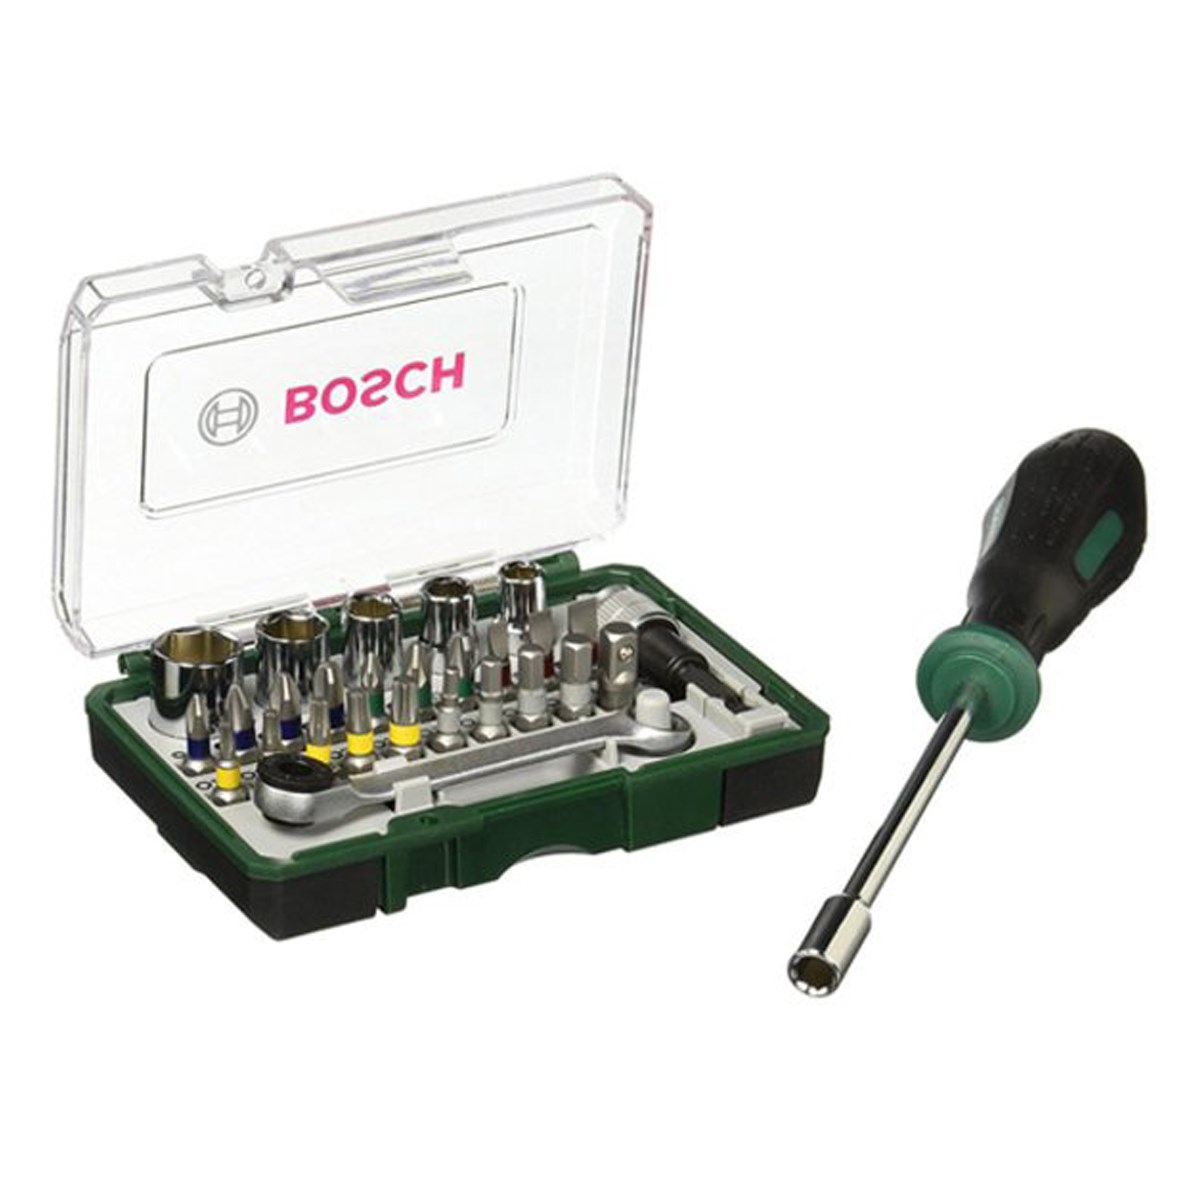 Купить отвертку bosch. E6u Bosch набор бит. Набор бит с трещоткой Bosch. Набор головок с трещоткой Bosch. Набор бит с отверткой Bosch Pro.